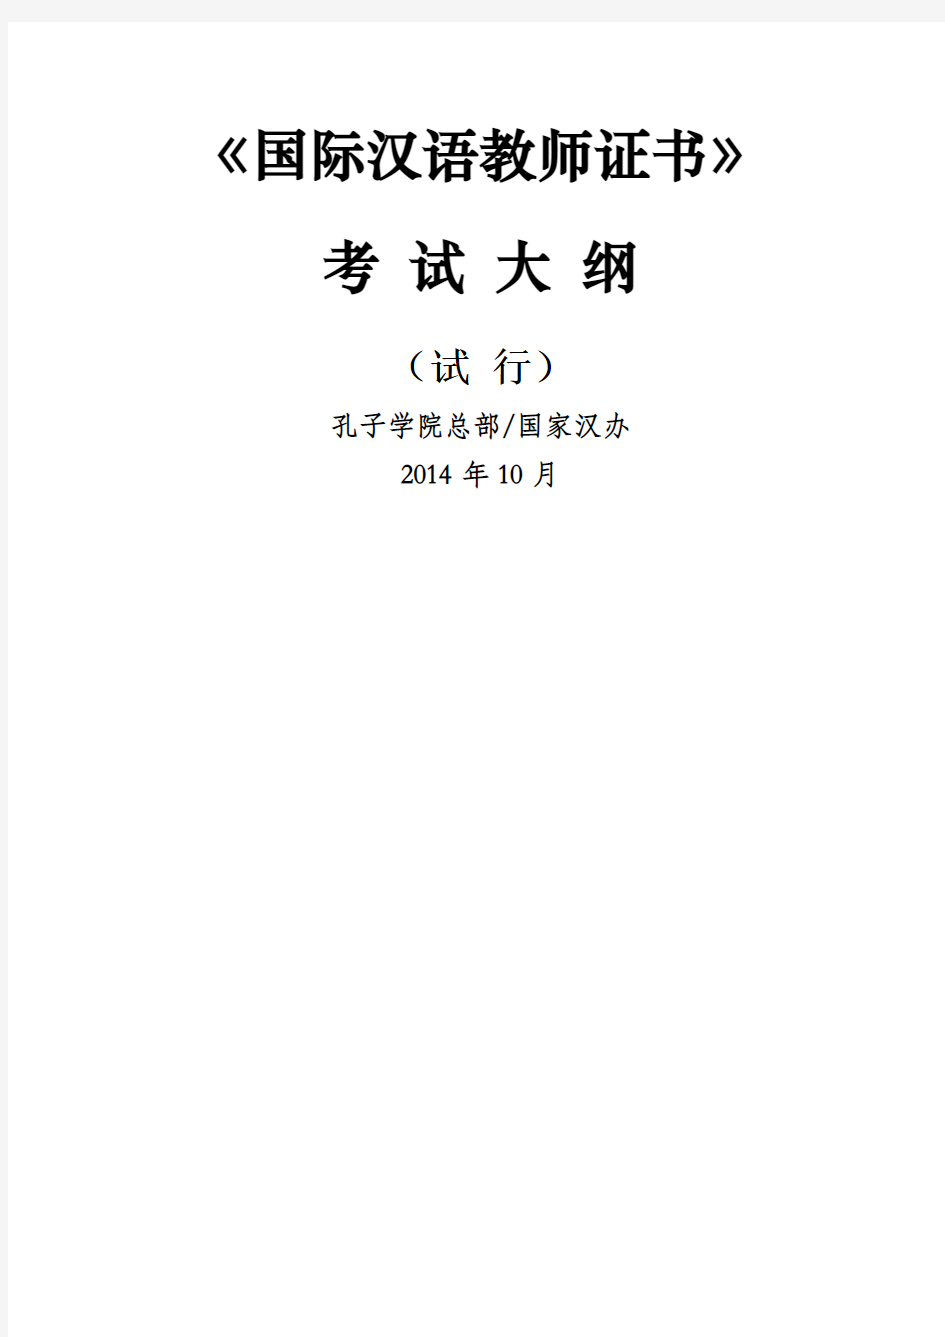 《国际汉语教师证书》考试大纲